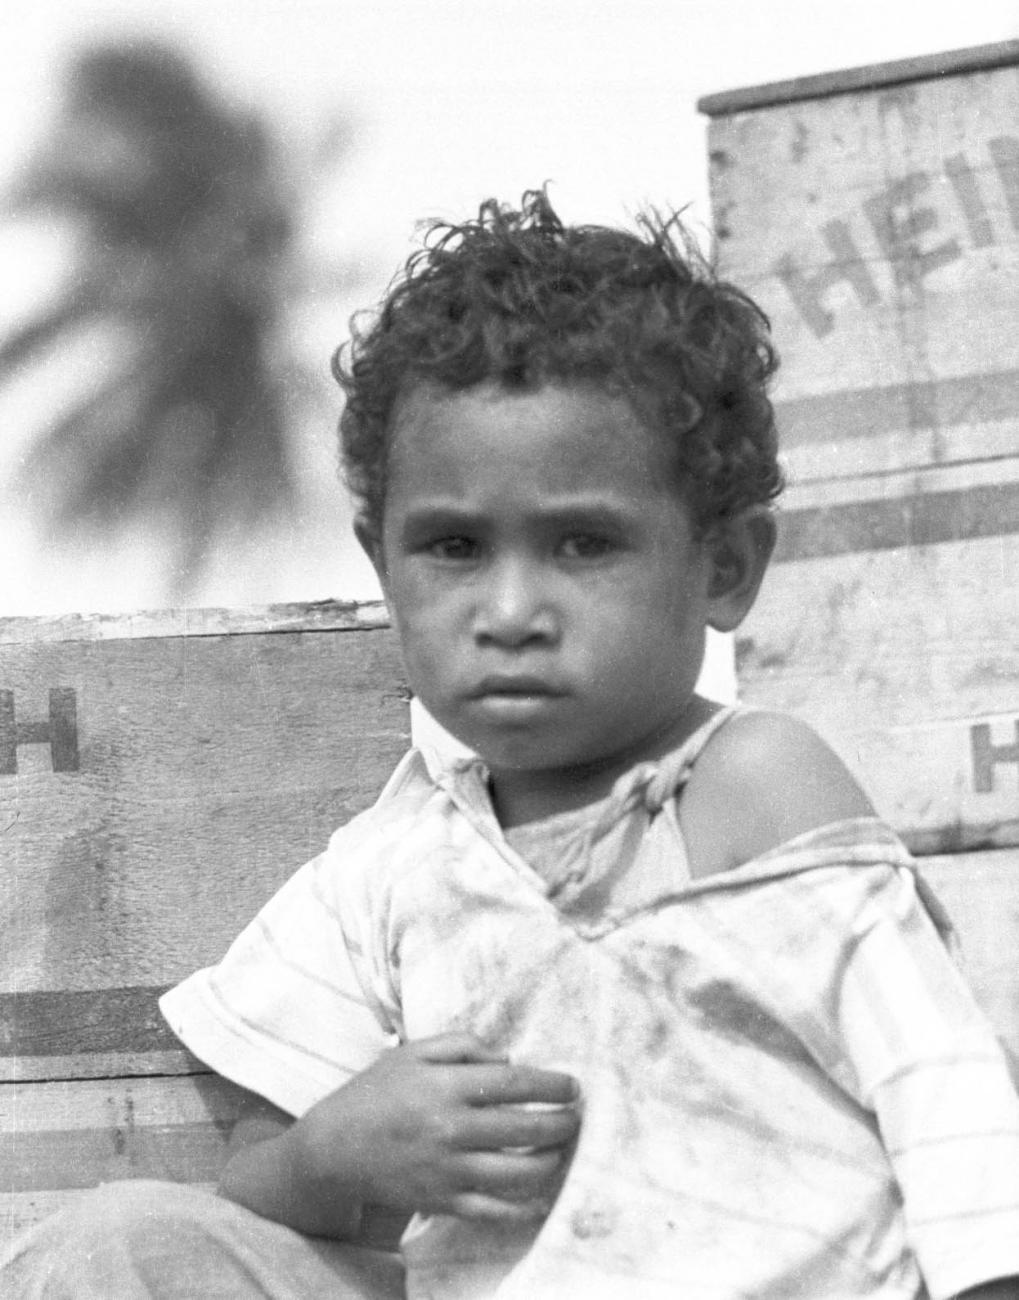 BD/133/406 - 
Portret van een kind
